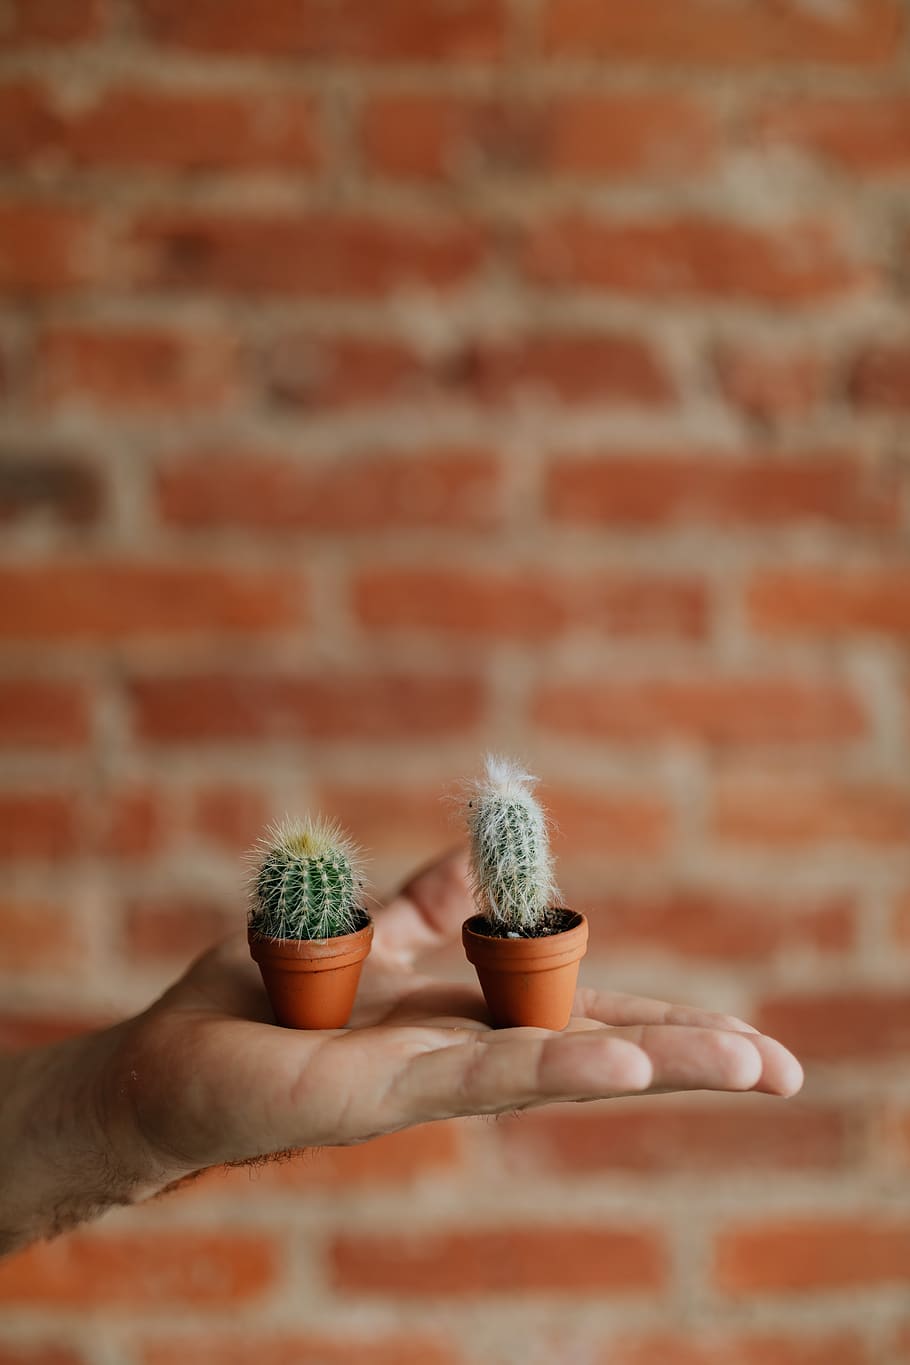 kaktus, miniatur, tanaman, pot, tanah liat, tangan manusia, dinding, satu orang, dinding bata, bata